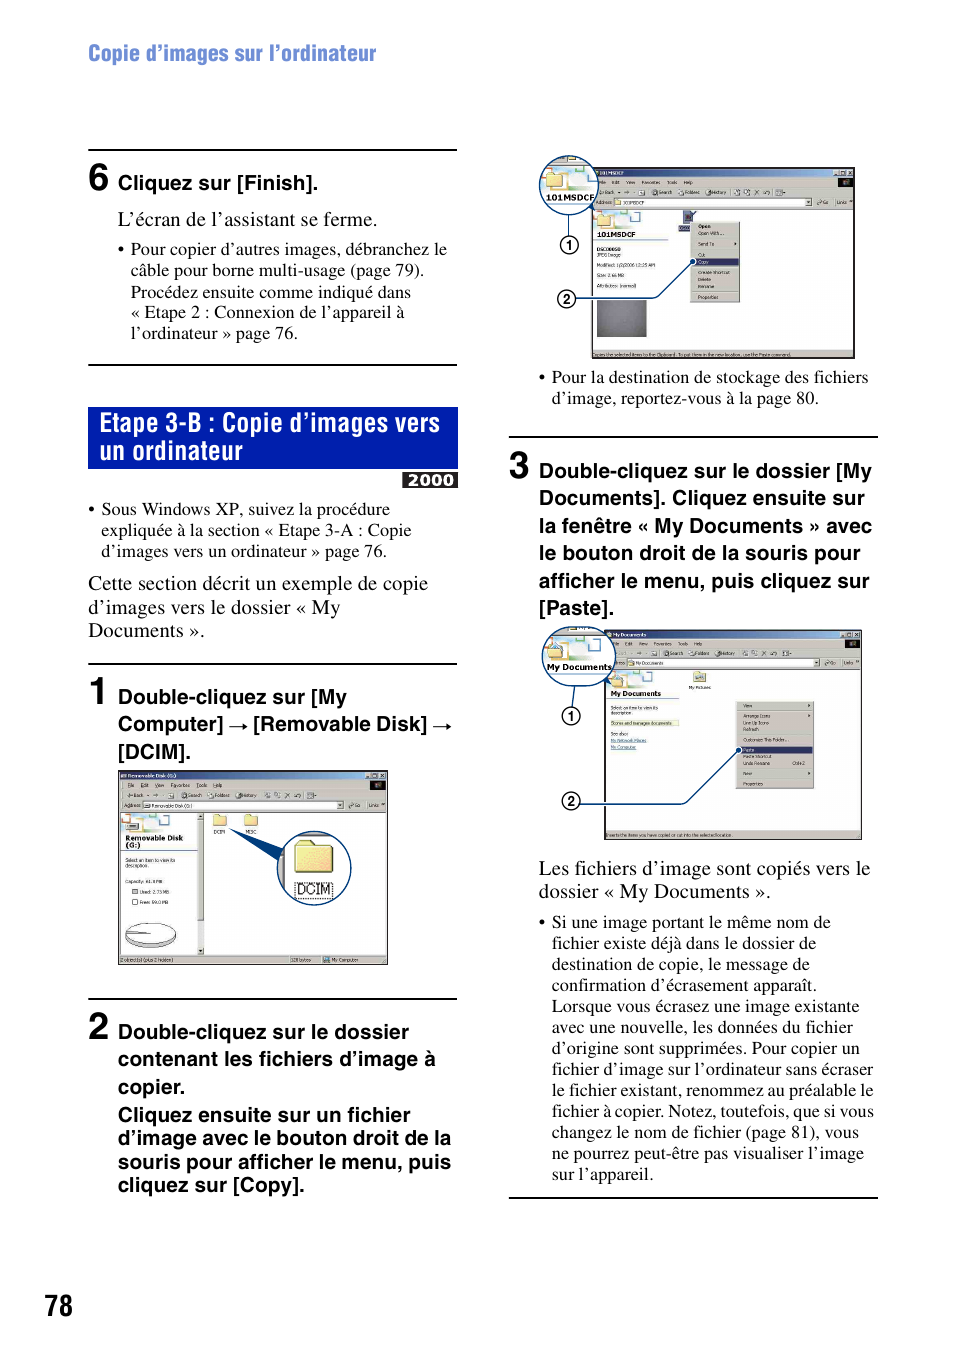 Etape 3-b : copie d’images vers un ordinateur | Sony DSC-T20 Manuel d'utilisation | Page 78 / 122